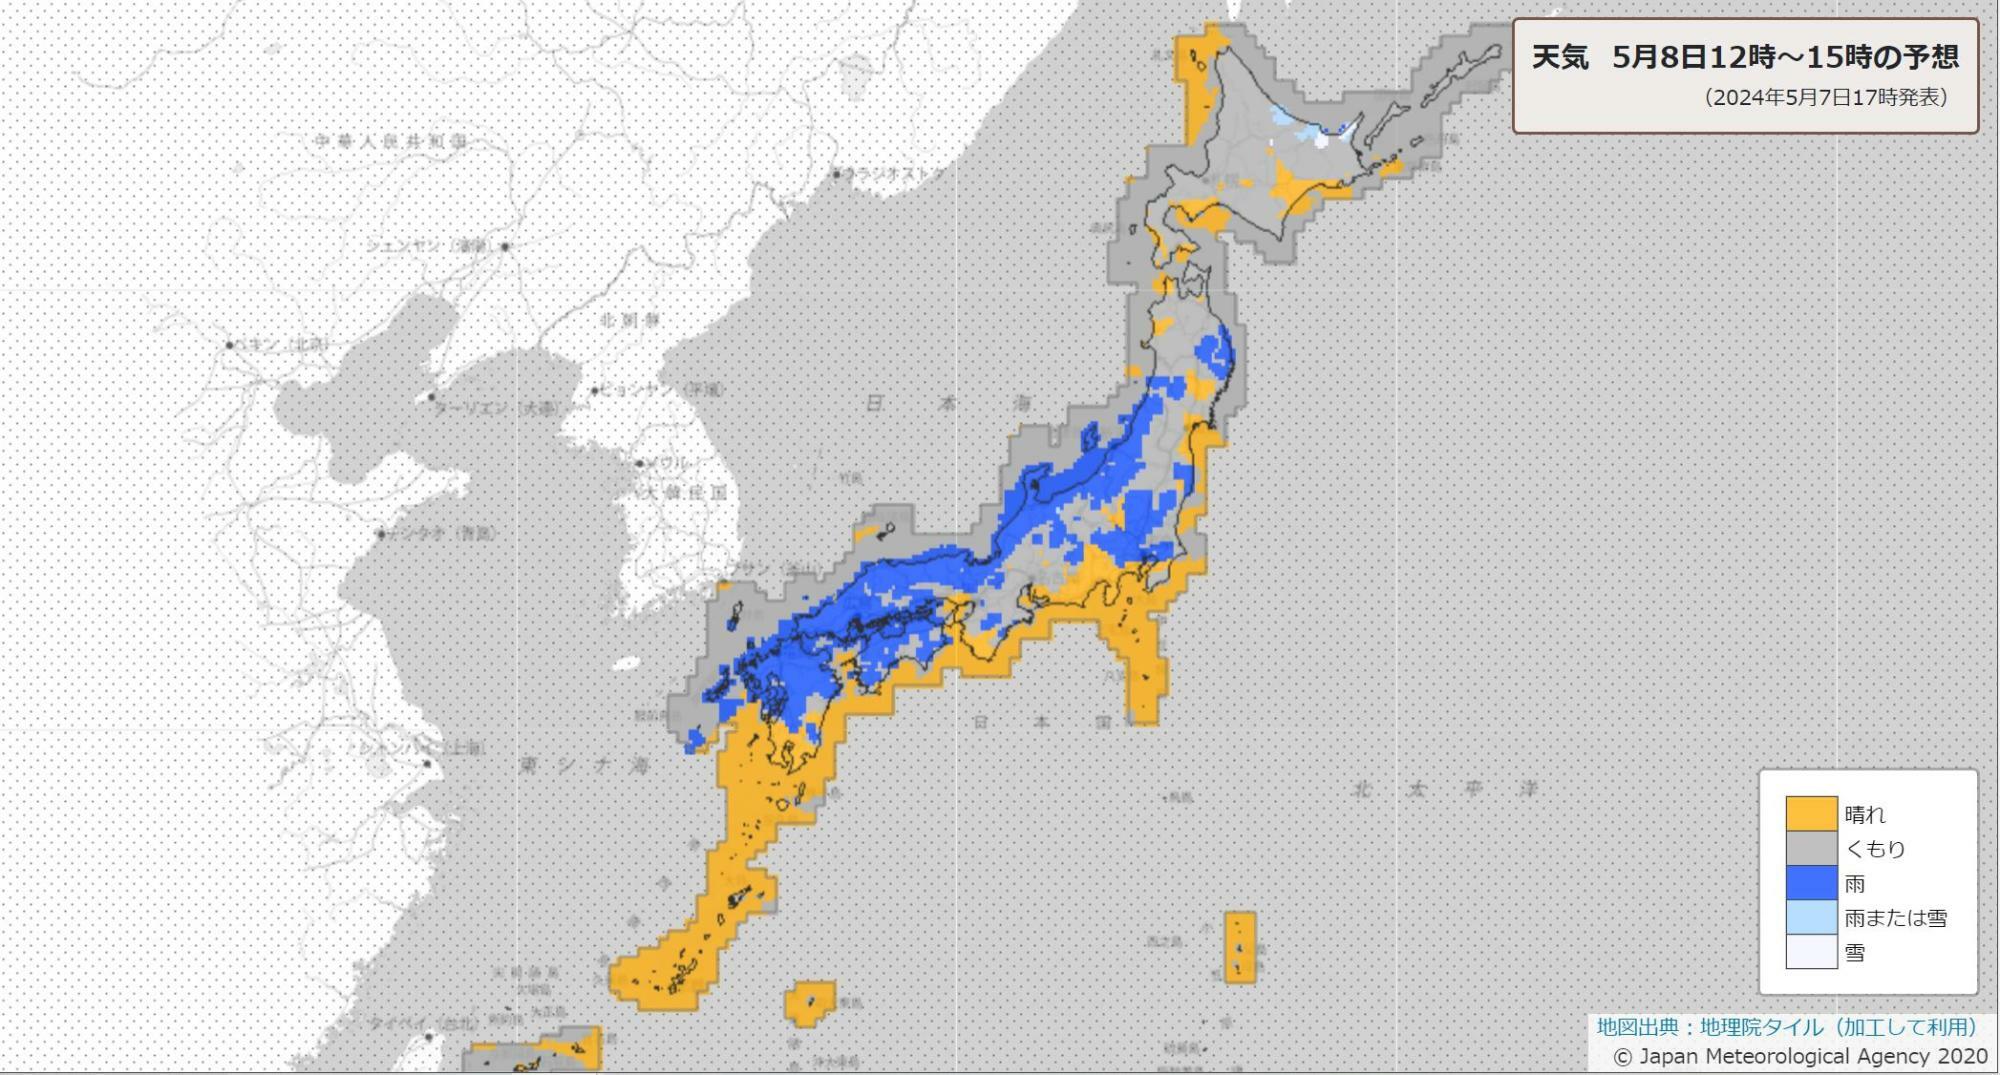 8日12時～15時の天気分布予報。気圧の谷の影響で雨が降る日本海側のほか、大気の状態が不安定になる関東にも青の雨の表示。